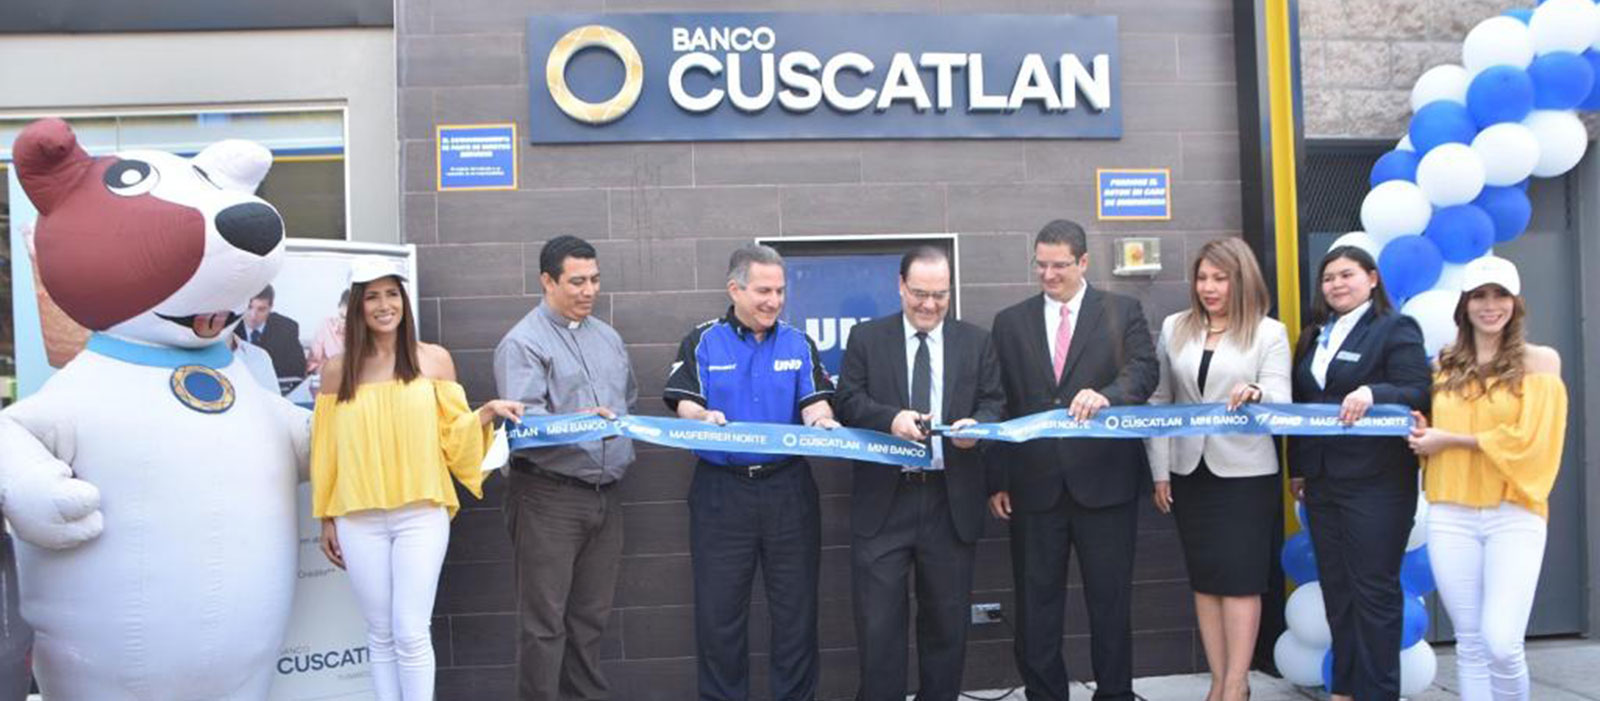 El Salvador: Banco CUSCATLÁN inaugura Minibanco en Gasolinera UNO